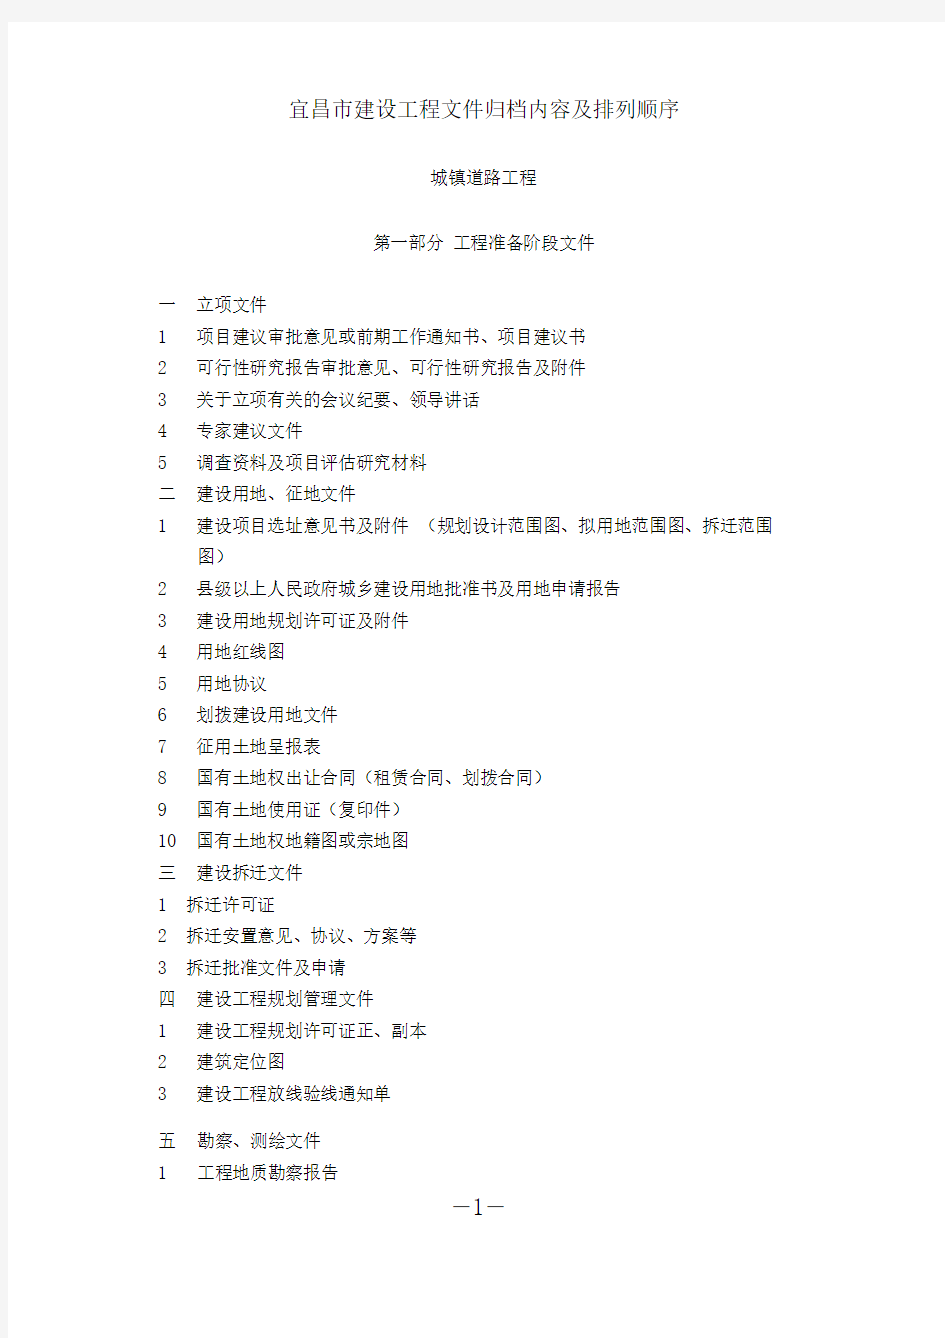 宜昌市建设工程文件归档内容及排列顺序